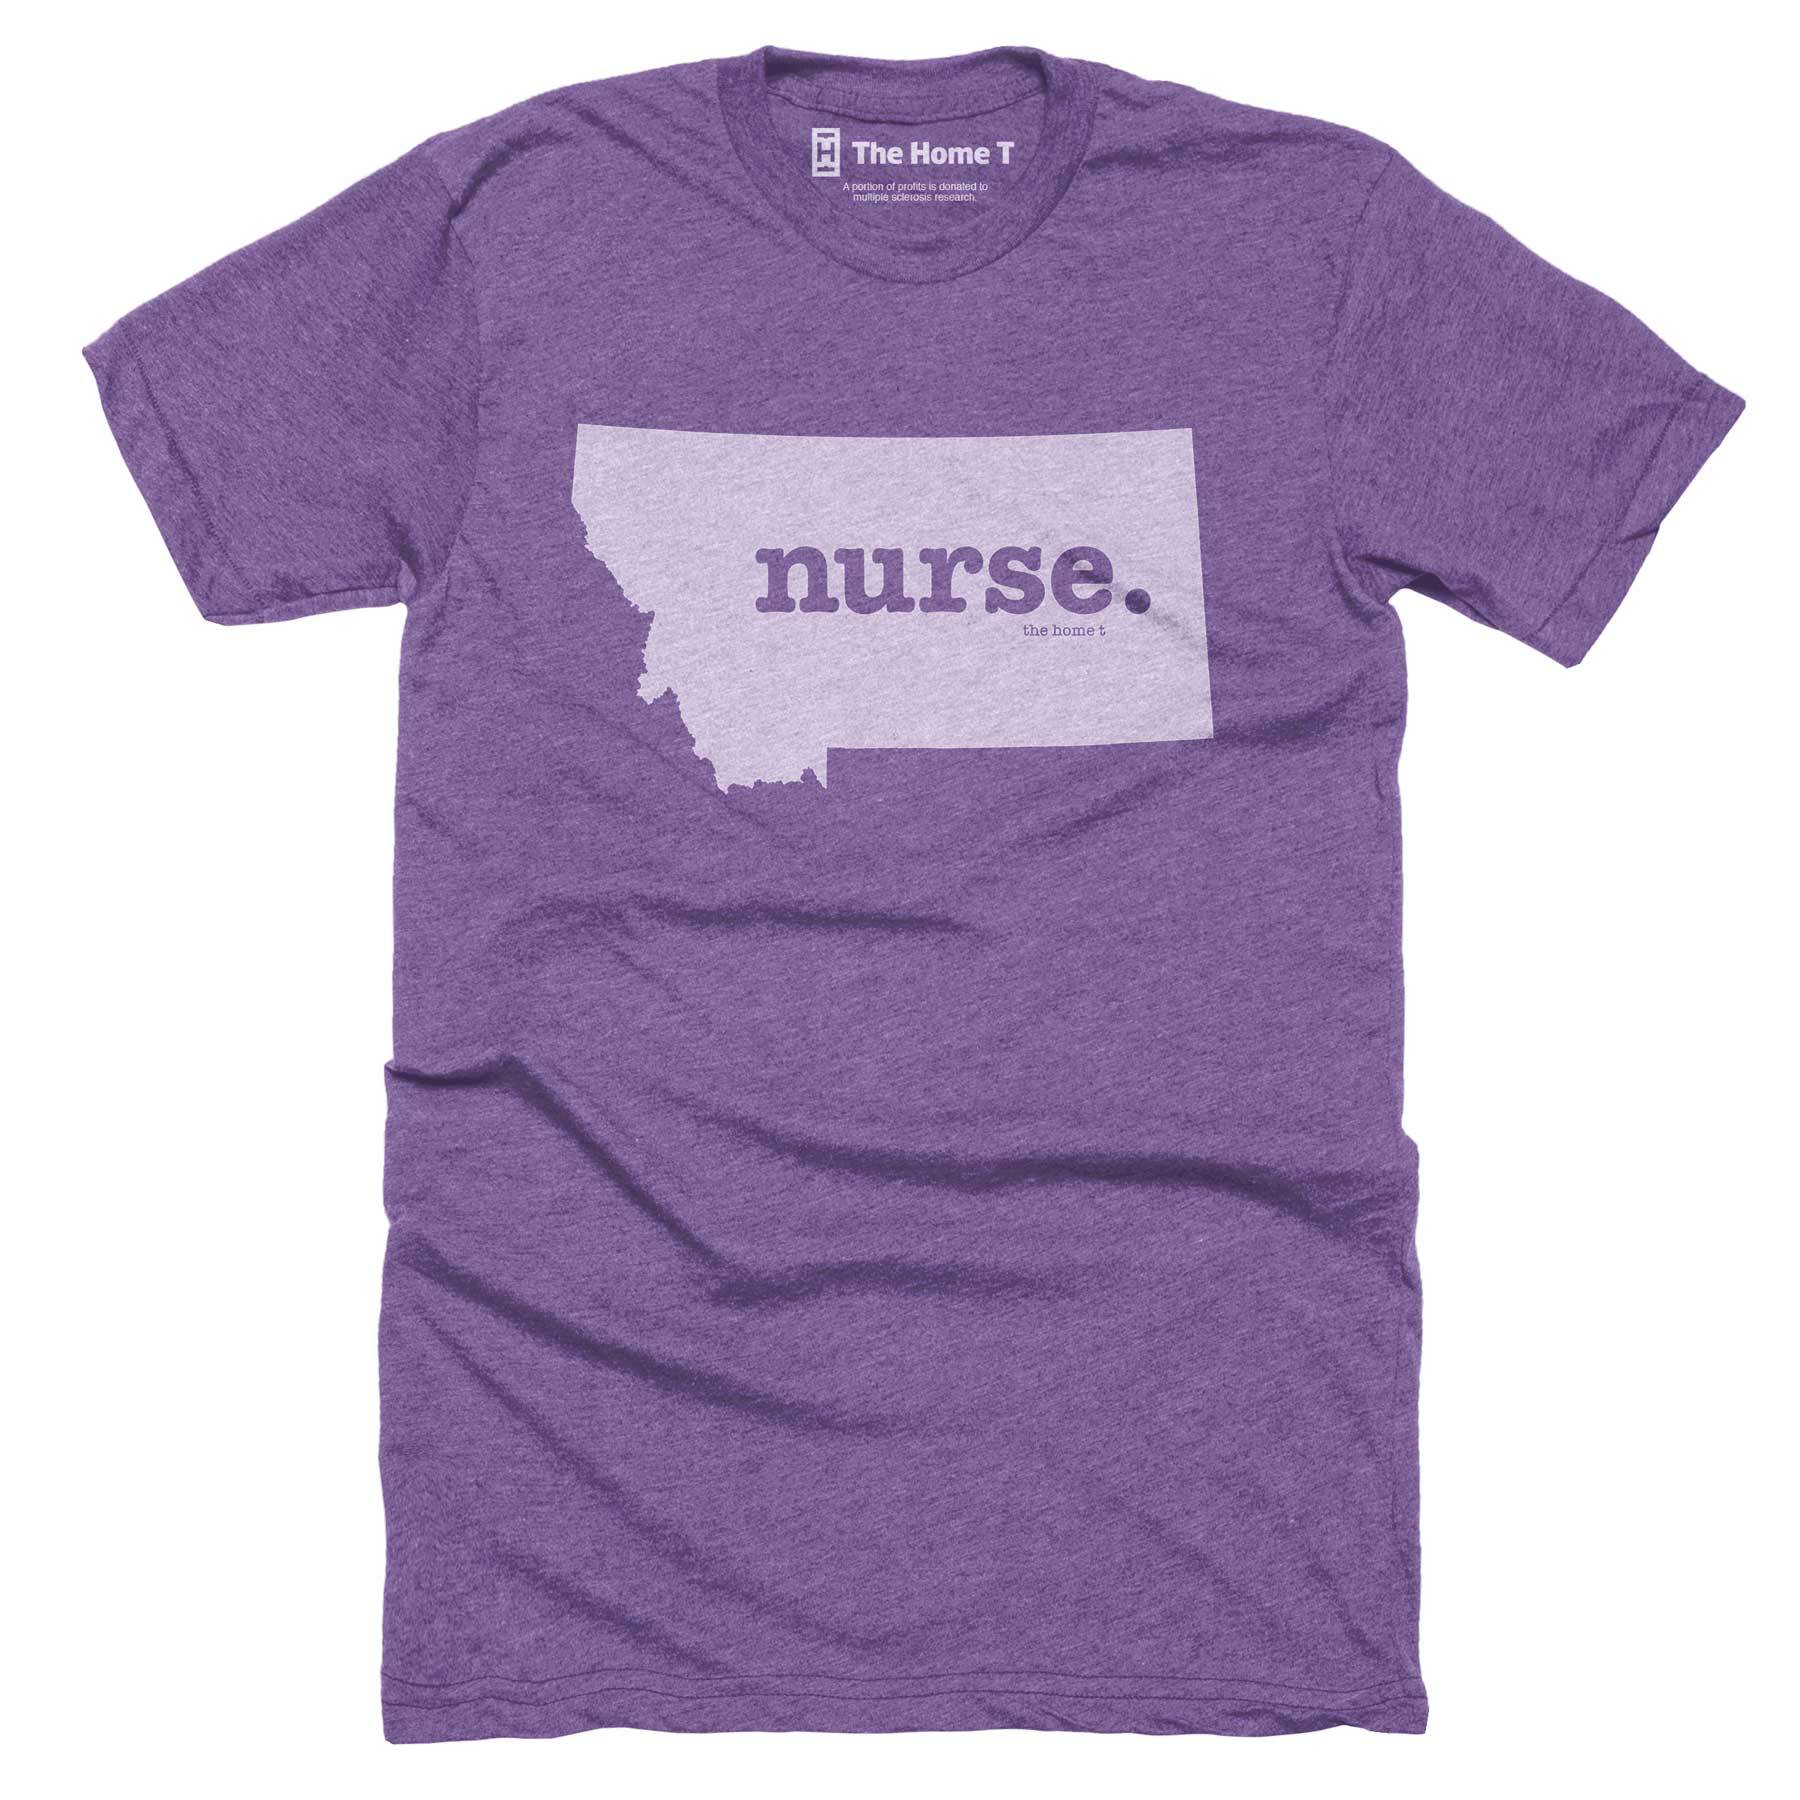 Montana Nurse Home T-Shirt Occupation The Home T